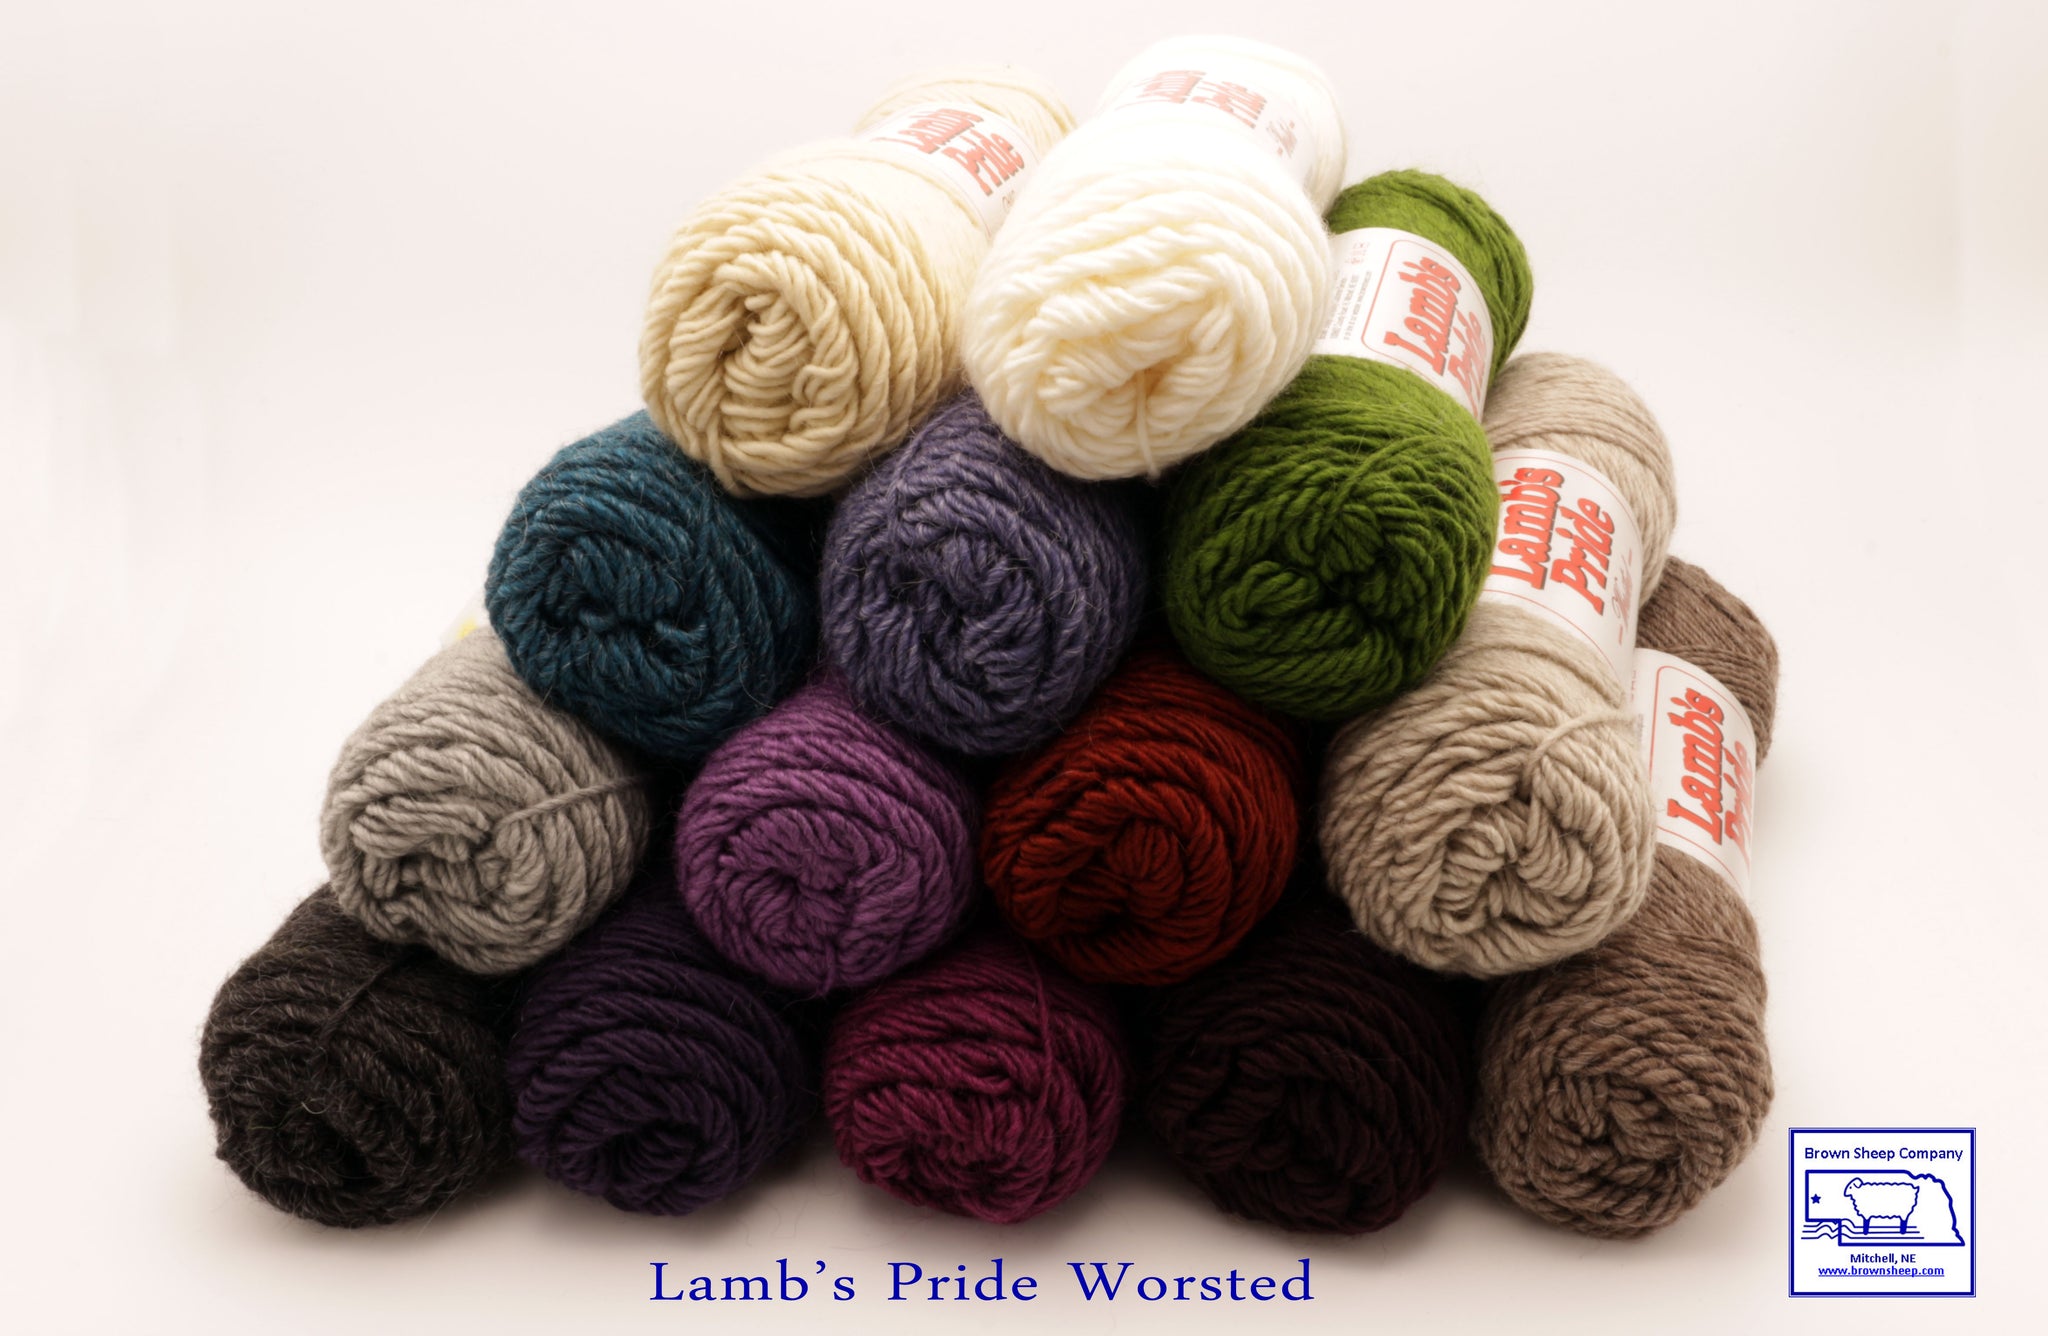 Eucalan Soap Woolwash, Large, - Black Sheep Knitting LLC